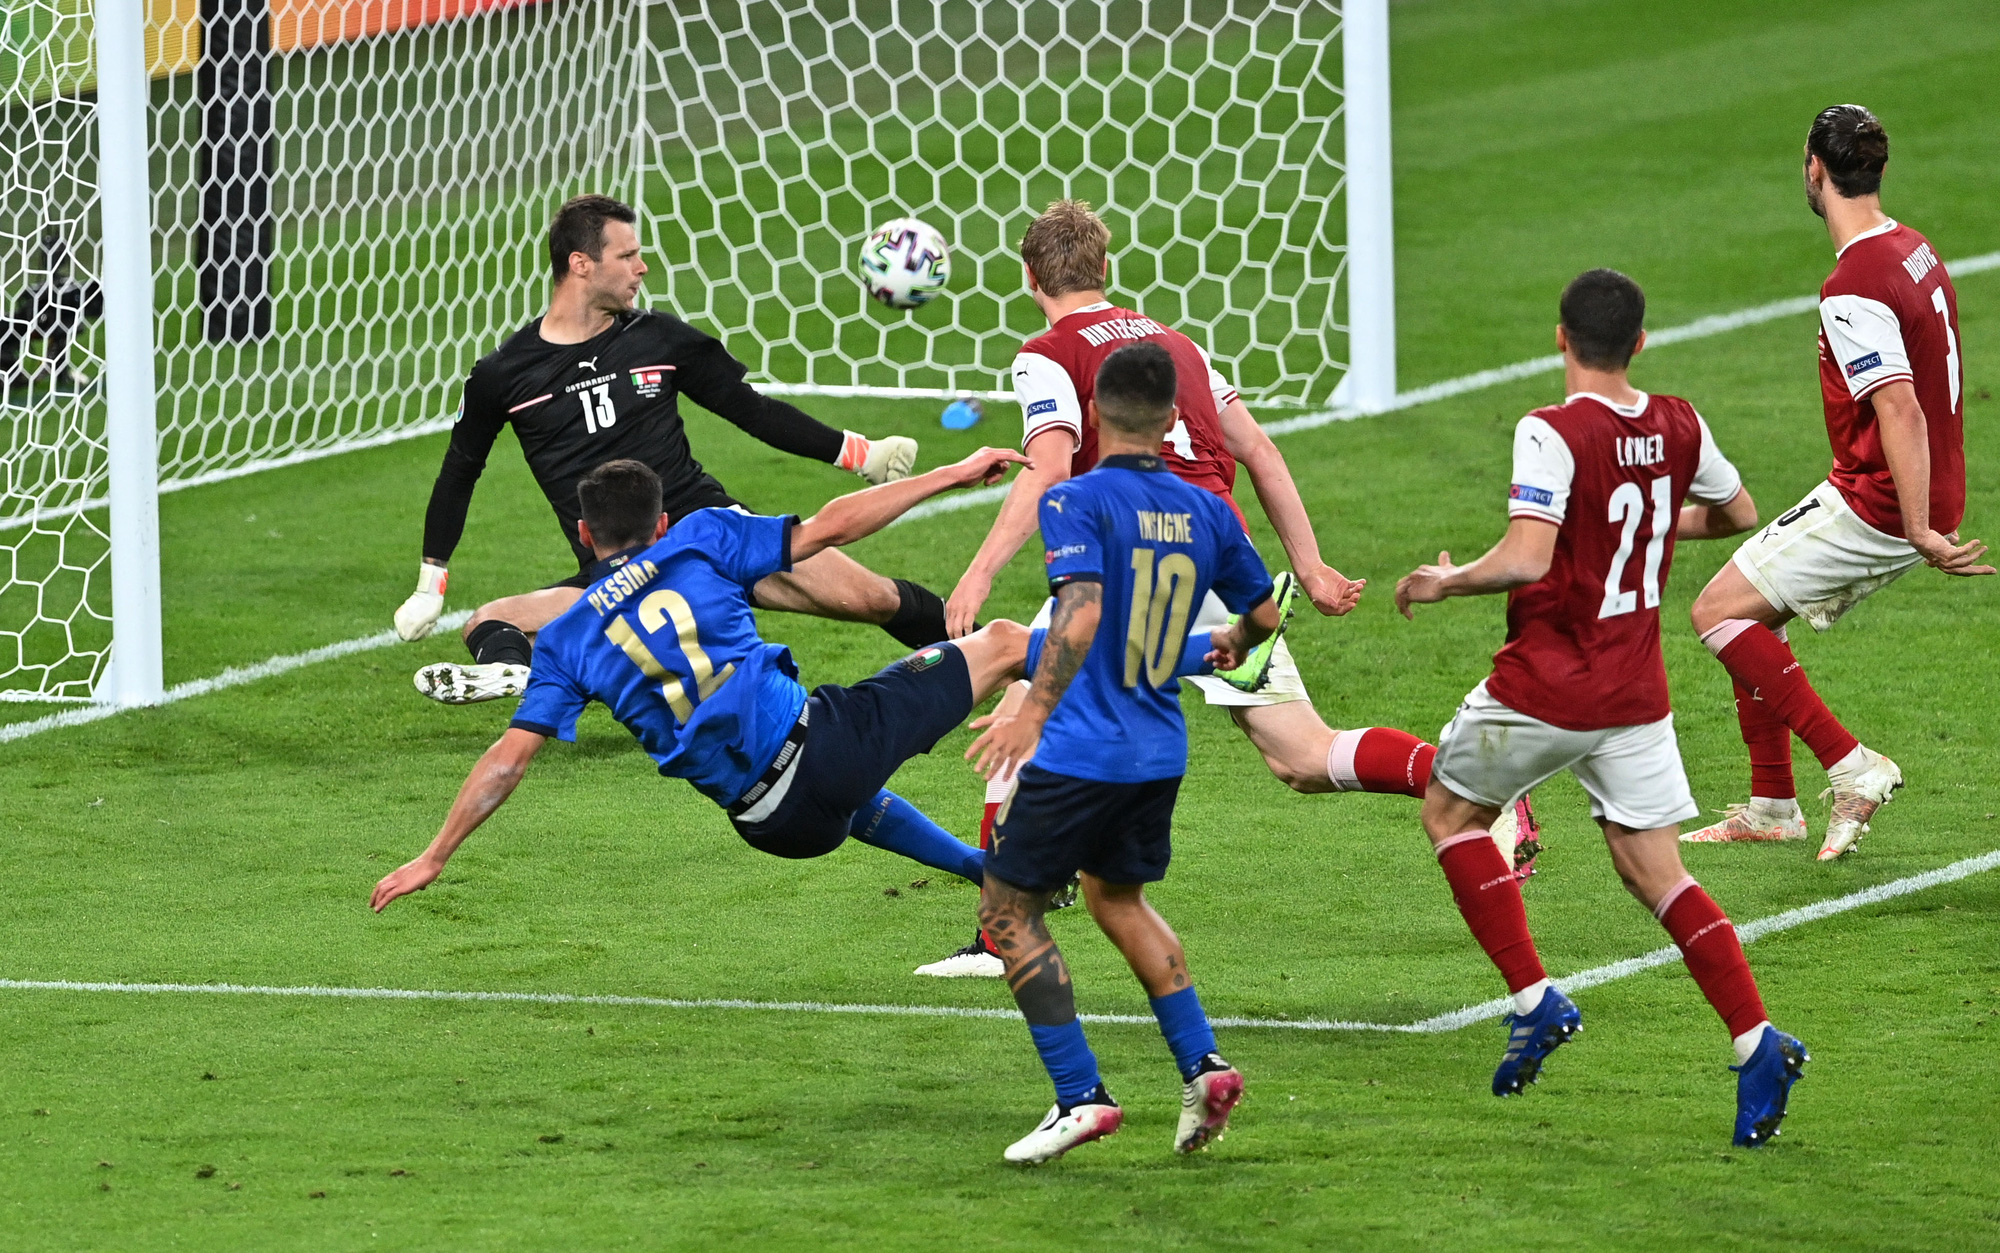 Tuyển Ý vào tứ kết Euro 2020 nhờ hai siêu phẩm bàn thắng - Ảnh 8.